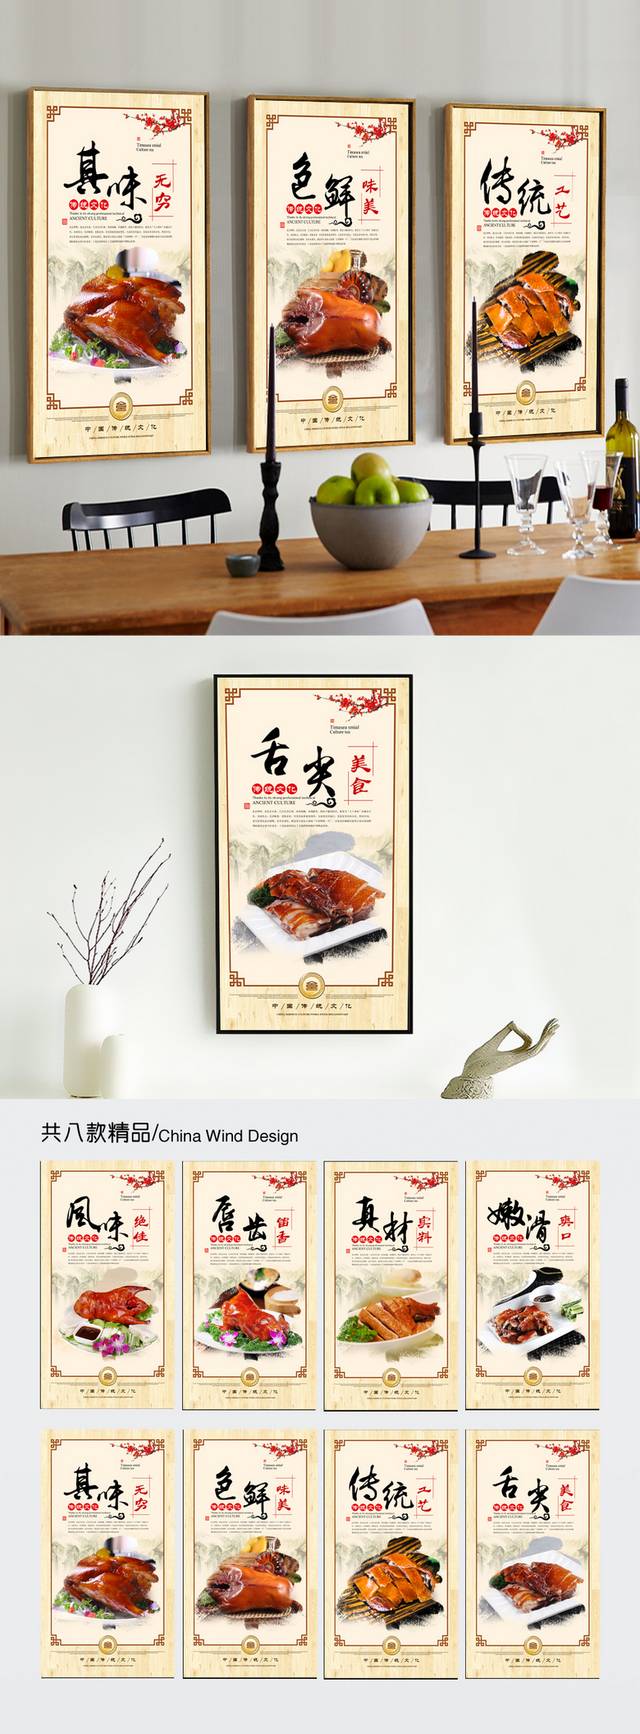 北京烤鸭文化挂画展板设计